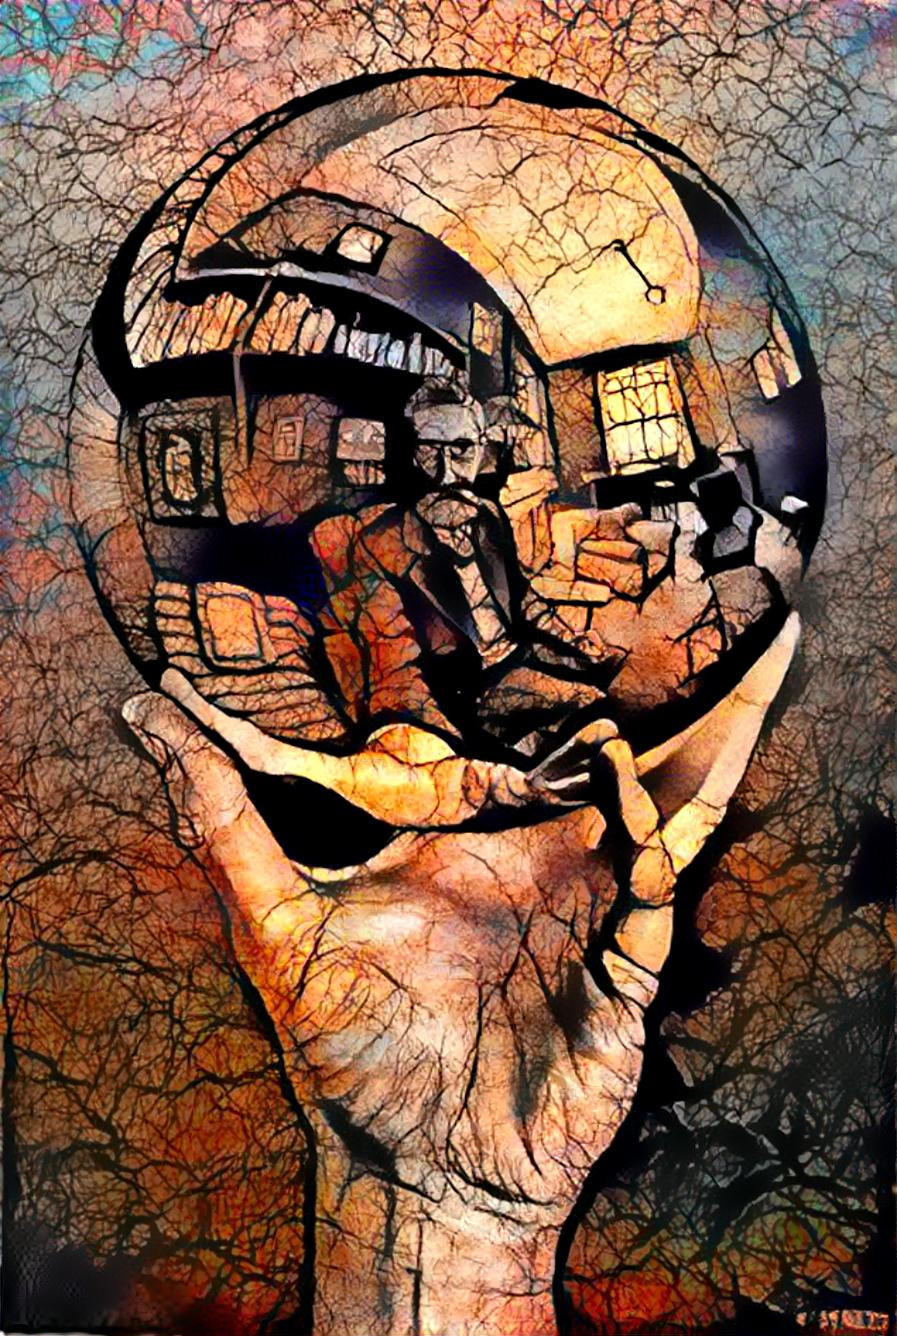 Mirror Ball by Escher